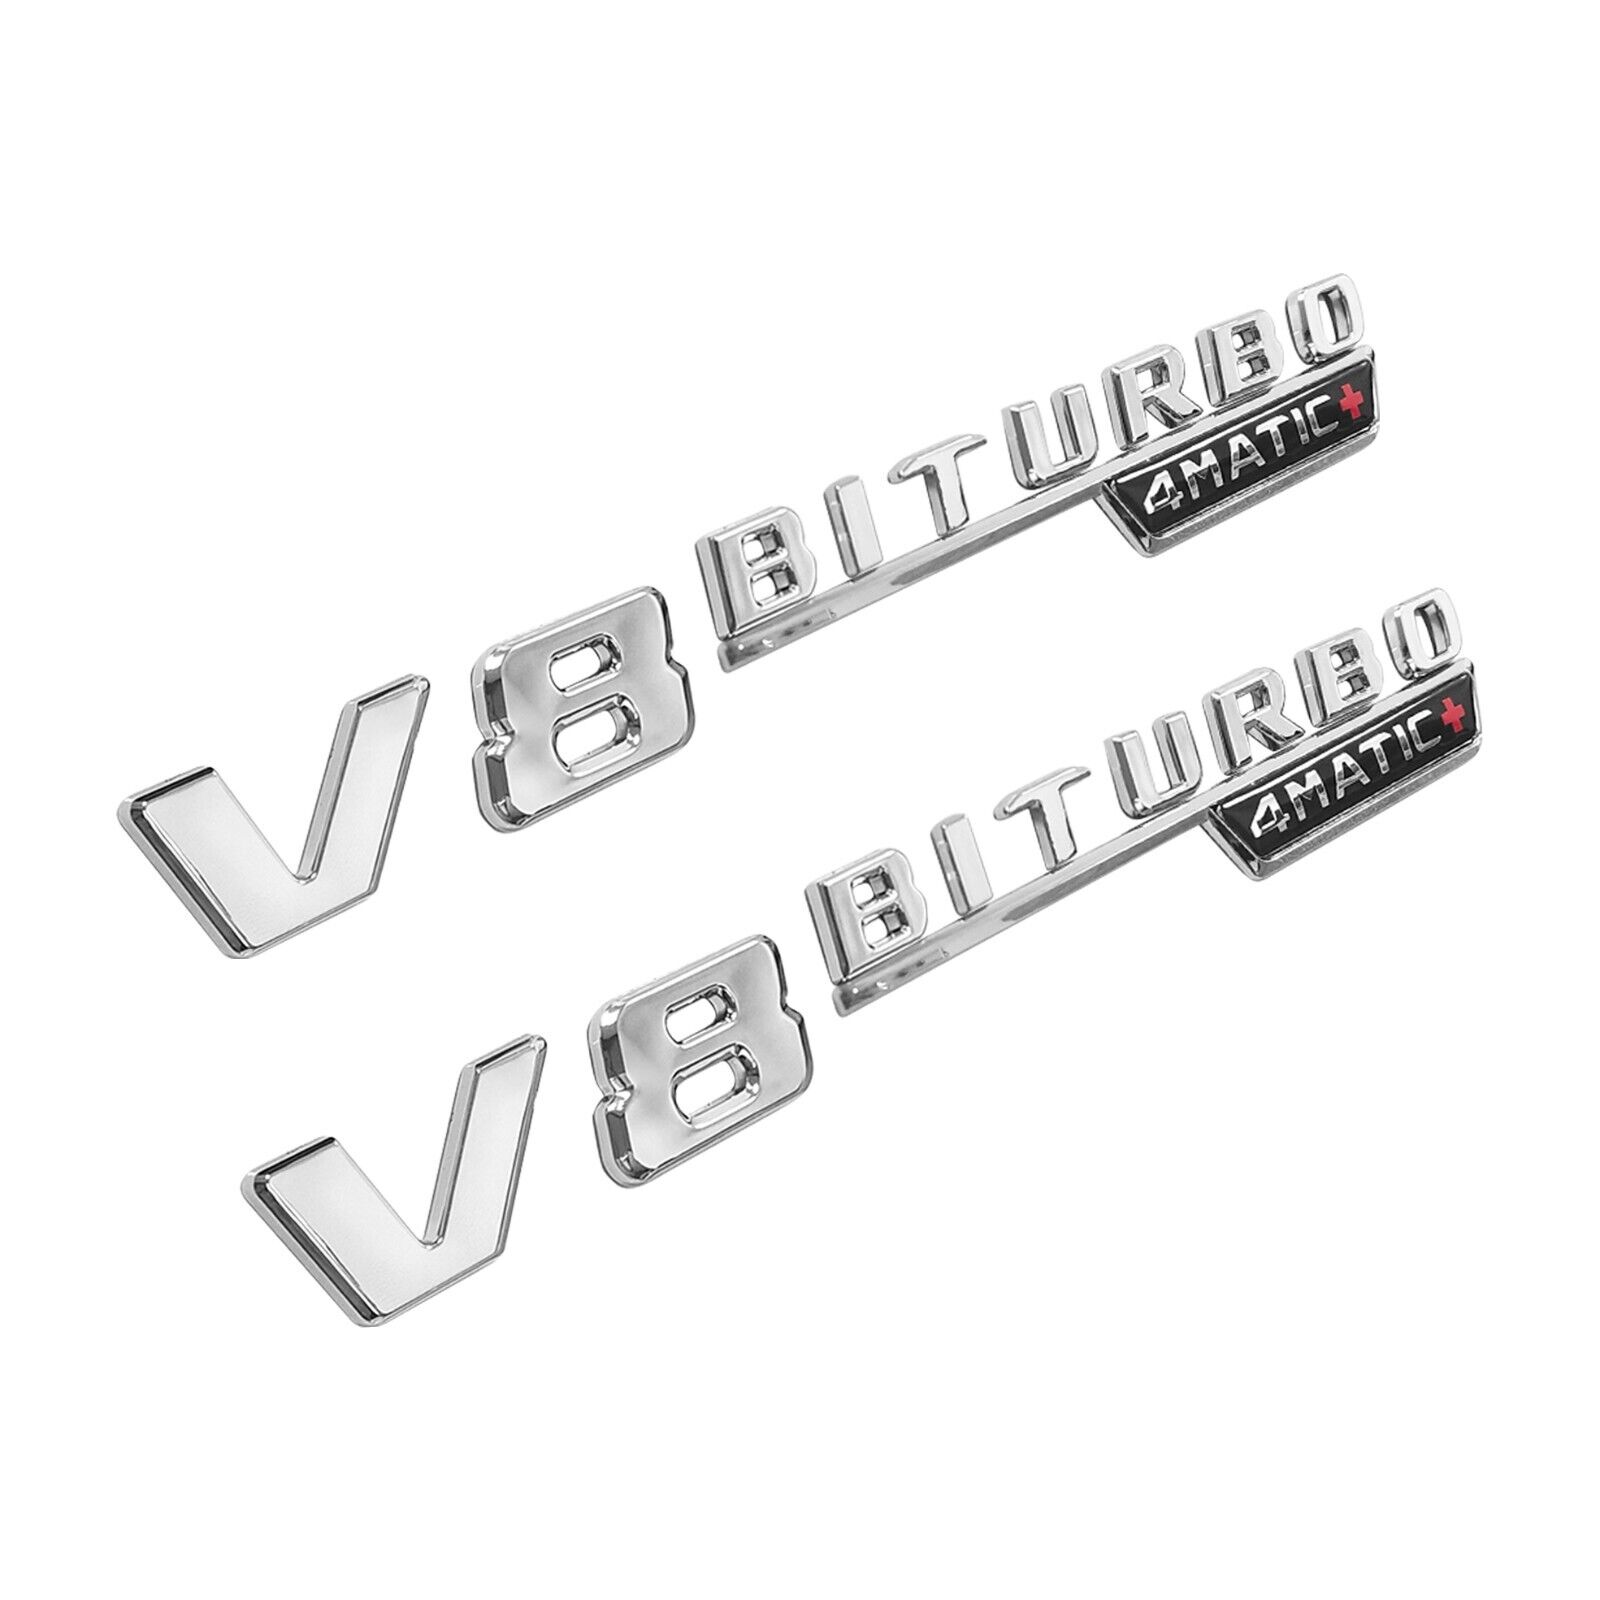 V8 BiTurbo 4Matic+ Emblem Side Fender 3D Chrome Badge For AMG CL63 E63 CLS SLK